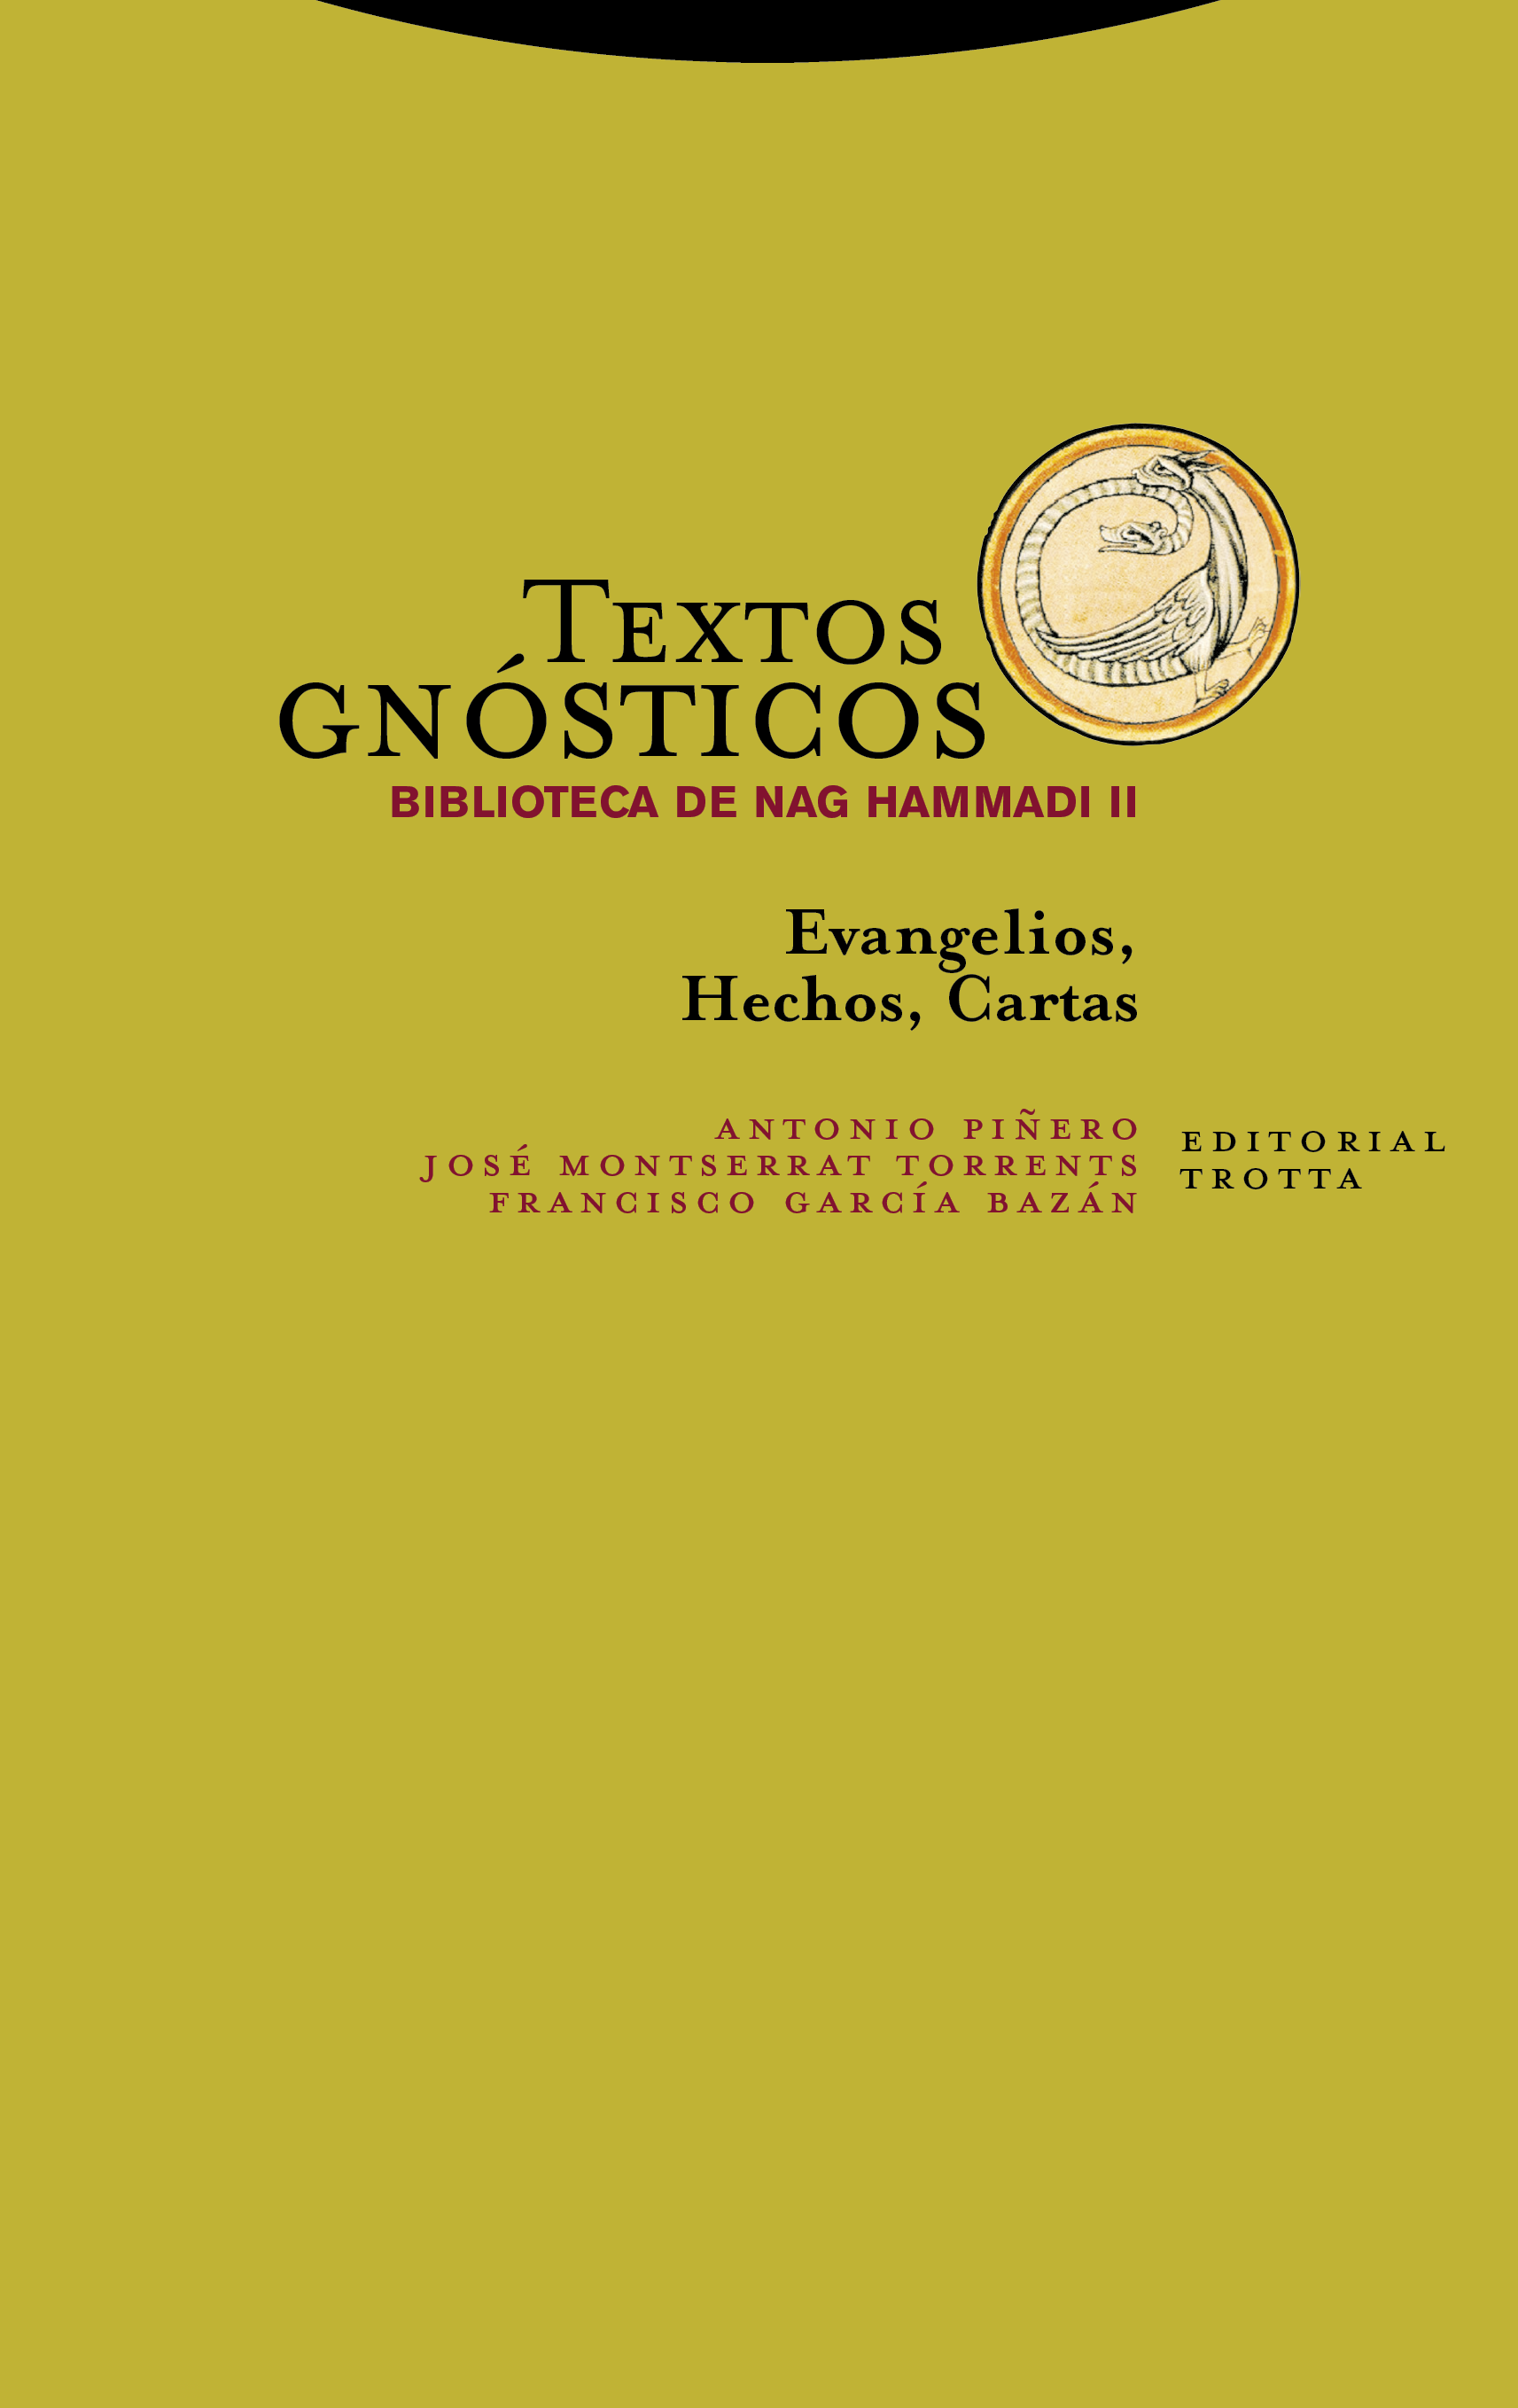 TEXTOS GNÓSTICOS II BIBLIOTECA DE NAG HAMMAD TRATADOS FILOSÓFICOS Y COSMOLÓGICOS